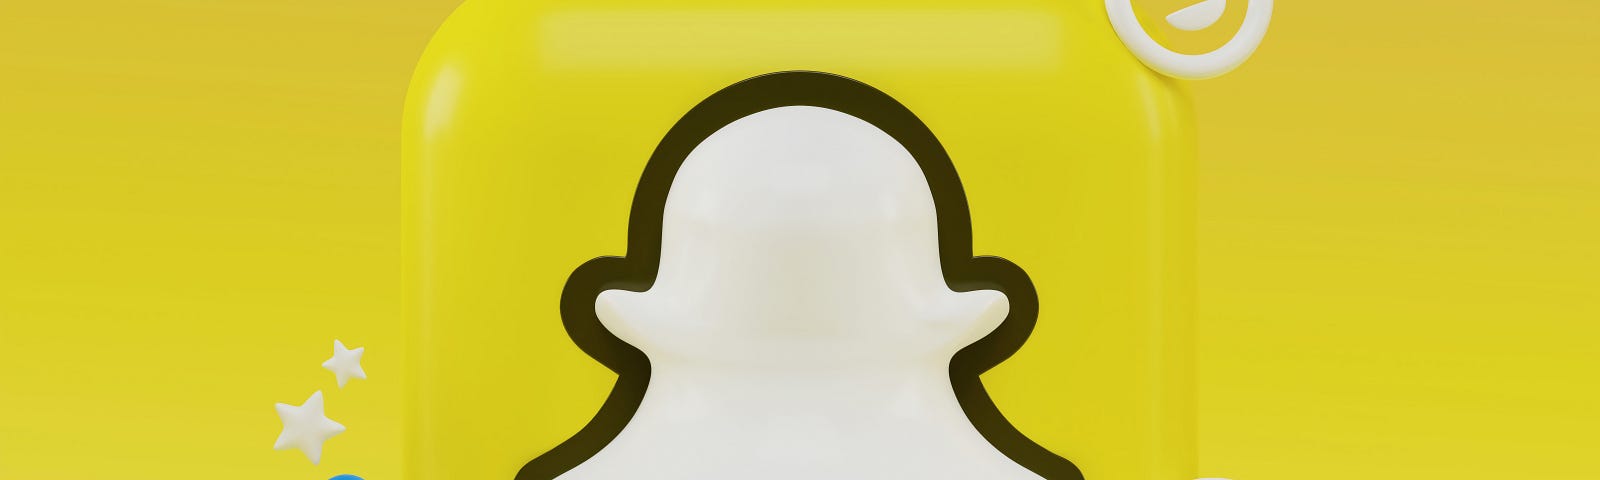 Snapchat, snap, my ai